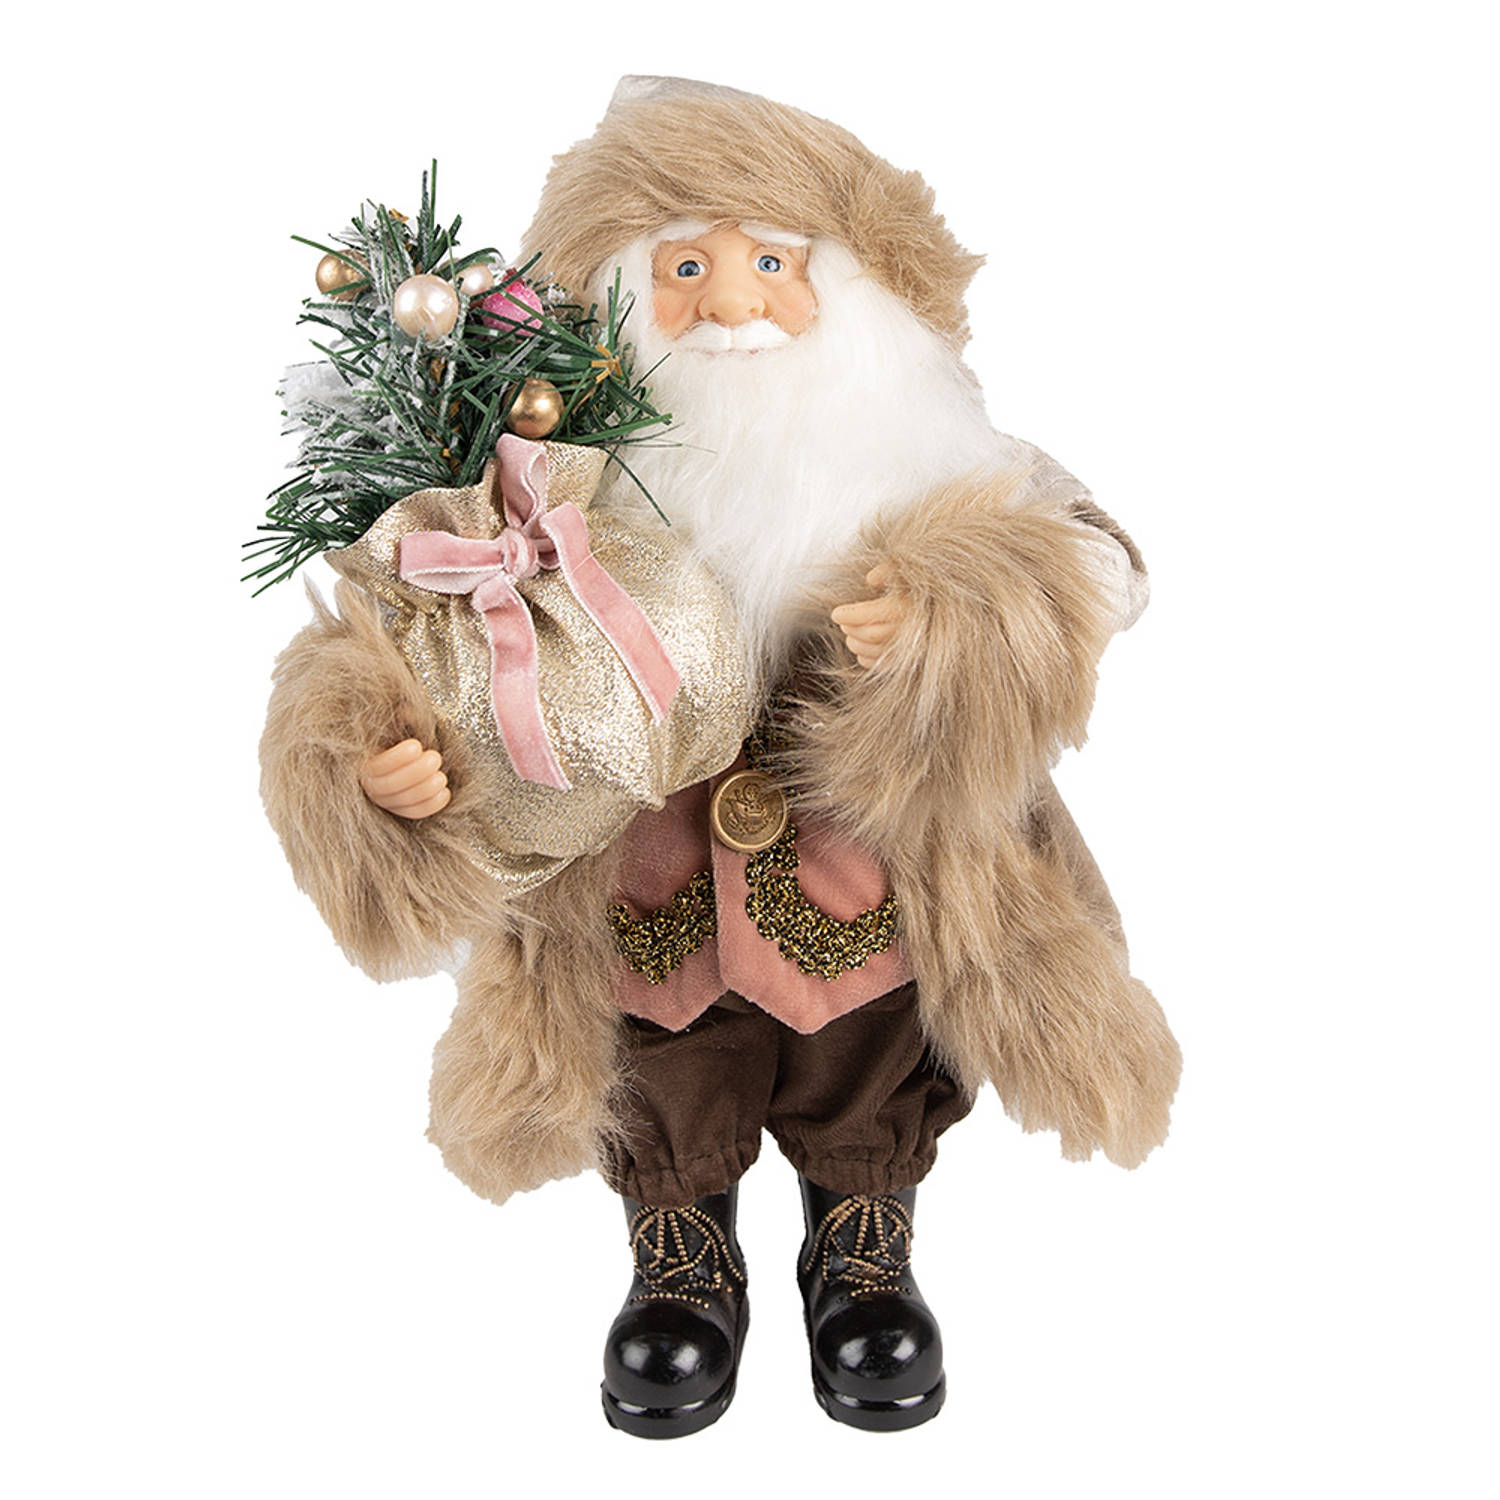 HAES DECO - Kerstman deco Figuur - Formaat 29x20x63 cm - Collectie: Traditional Santa - Kleur Beige - Materiaal Textiel op kunststof - Kerst Figuur, Kerstdecoratie